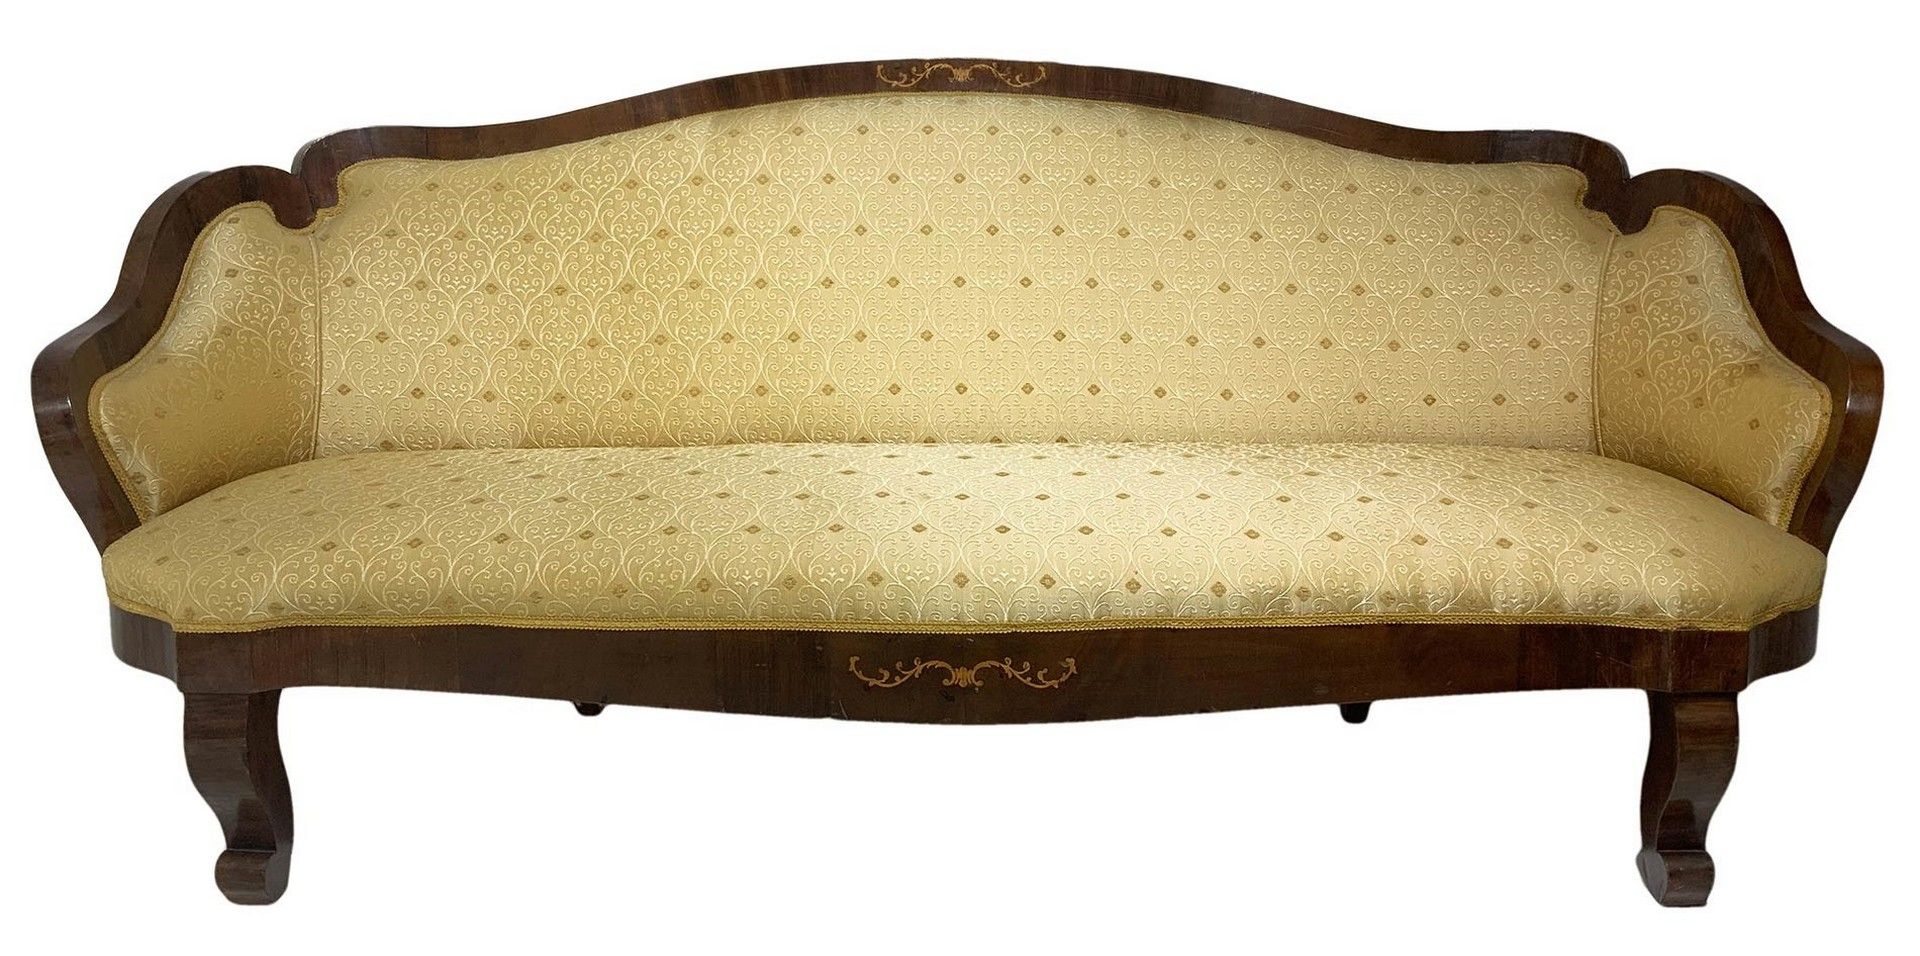 Null 座椅和靠背底部有中央镶嵌物的沙发，路易-菲利普，19世纪，高92厘米，宽210厘米，深70厘米。